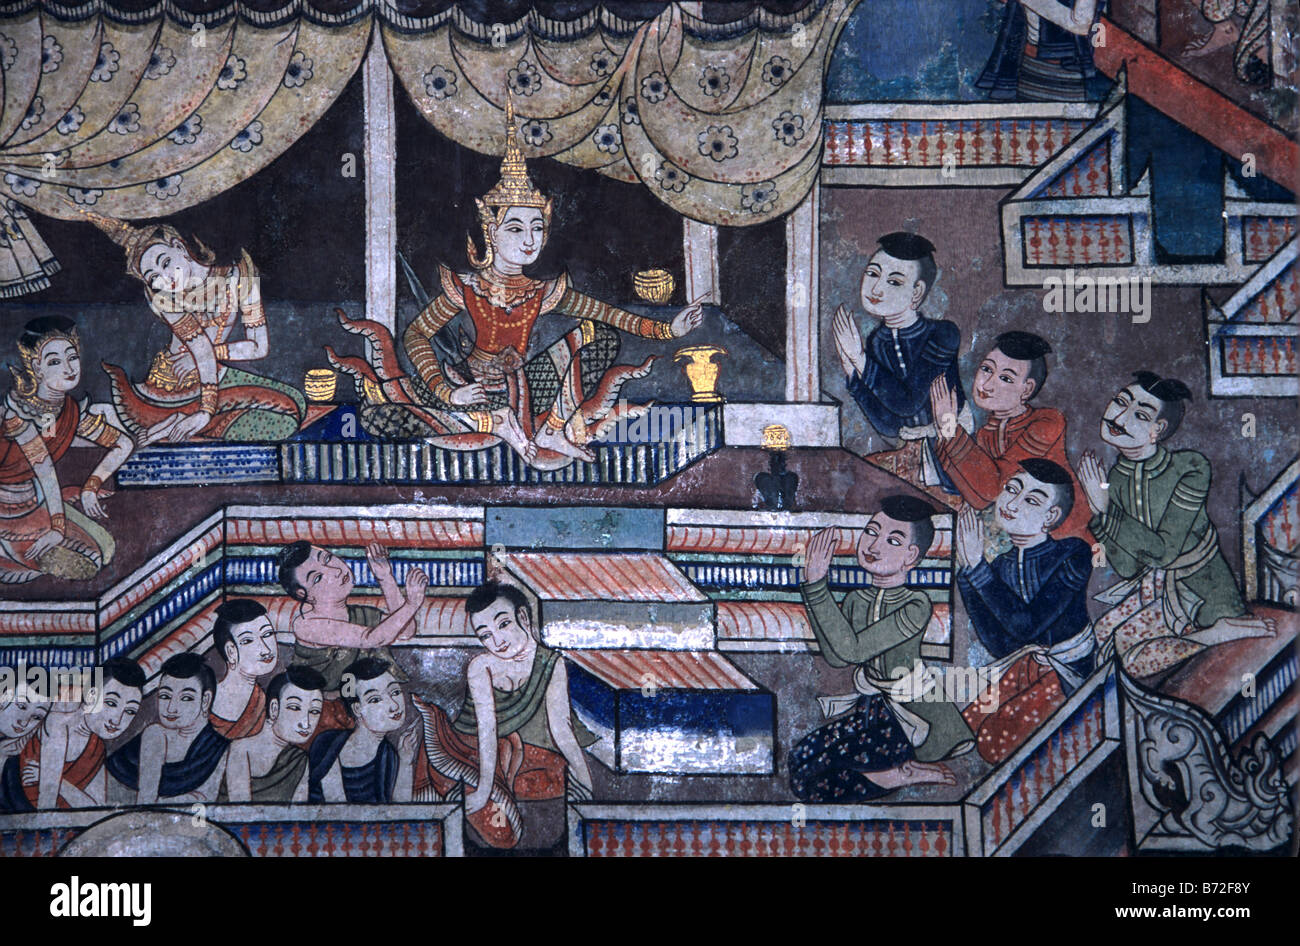 Thai Royal Gerichtsszene mit Begleitern in einem thailändischen Wandbild oder Wandmalerei, Wihan Lai Kham, Wat Phra Singh, Chiang Mai, Thailand Stockfoto